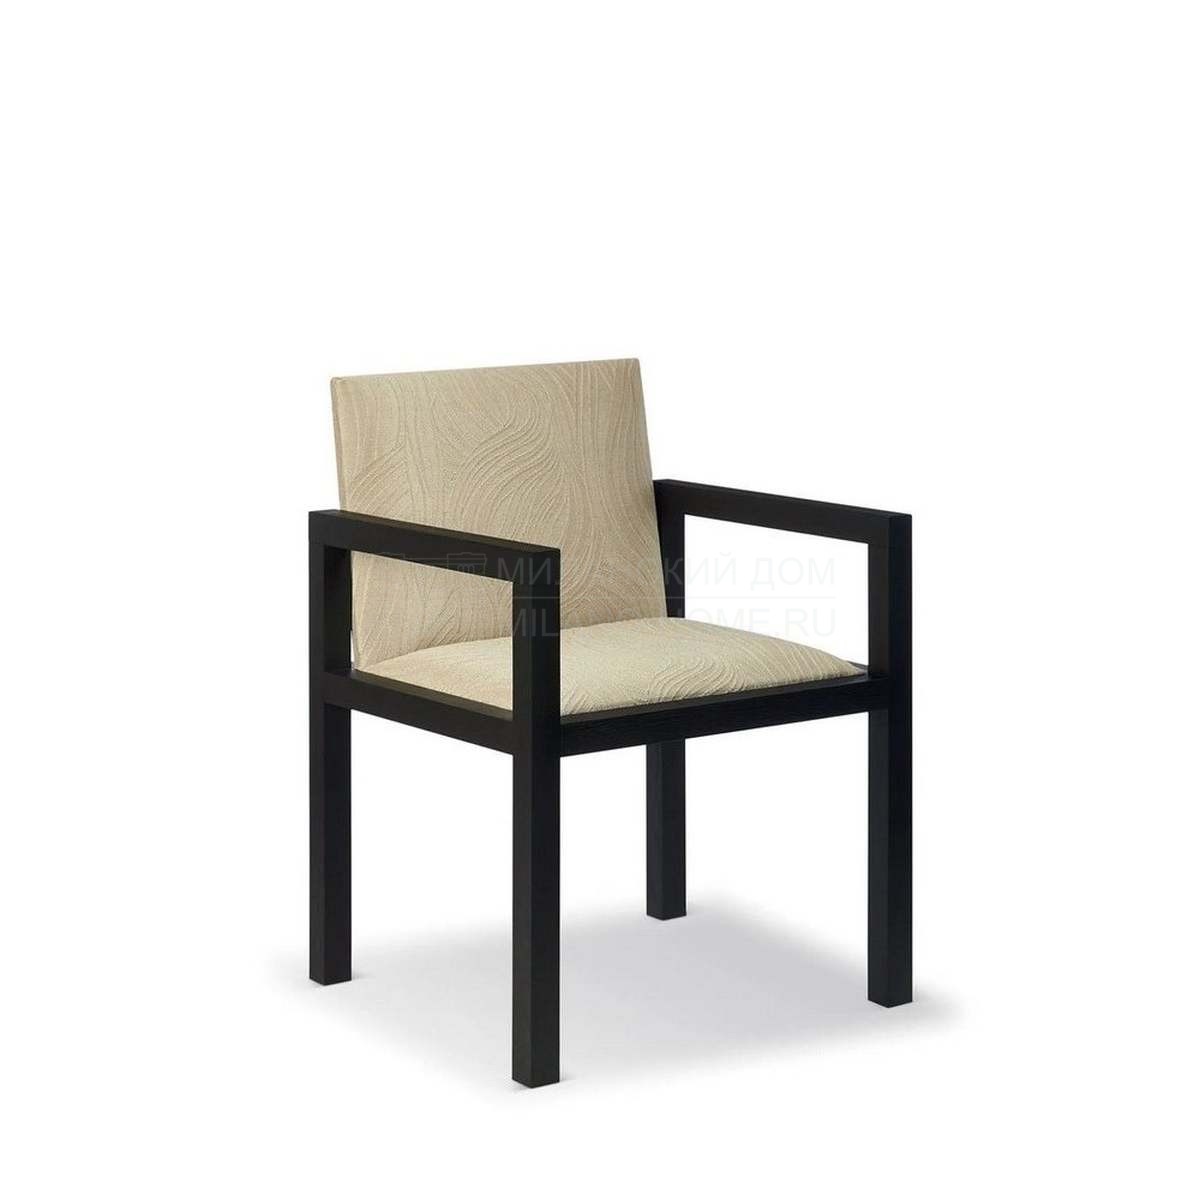 Полукресло Dallas chair with armrests из Италии фабрики ARMANI CASA